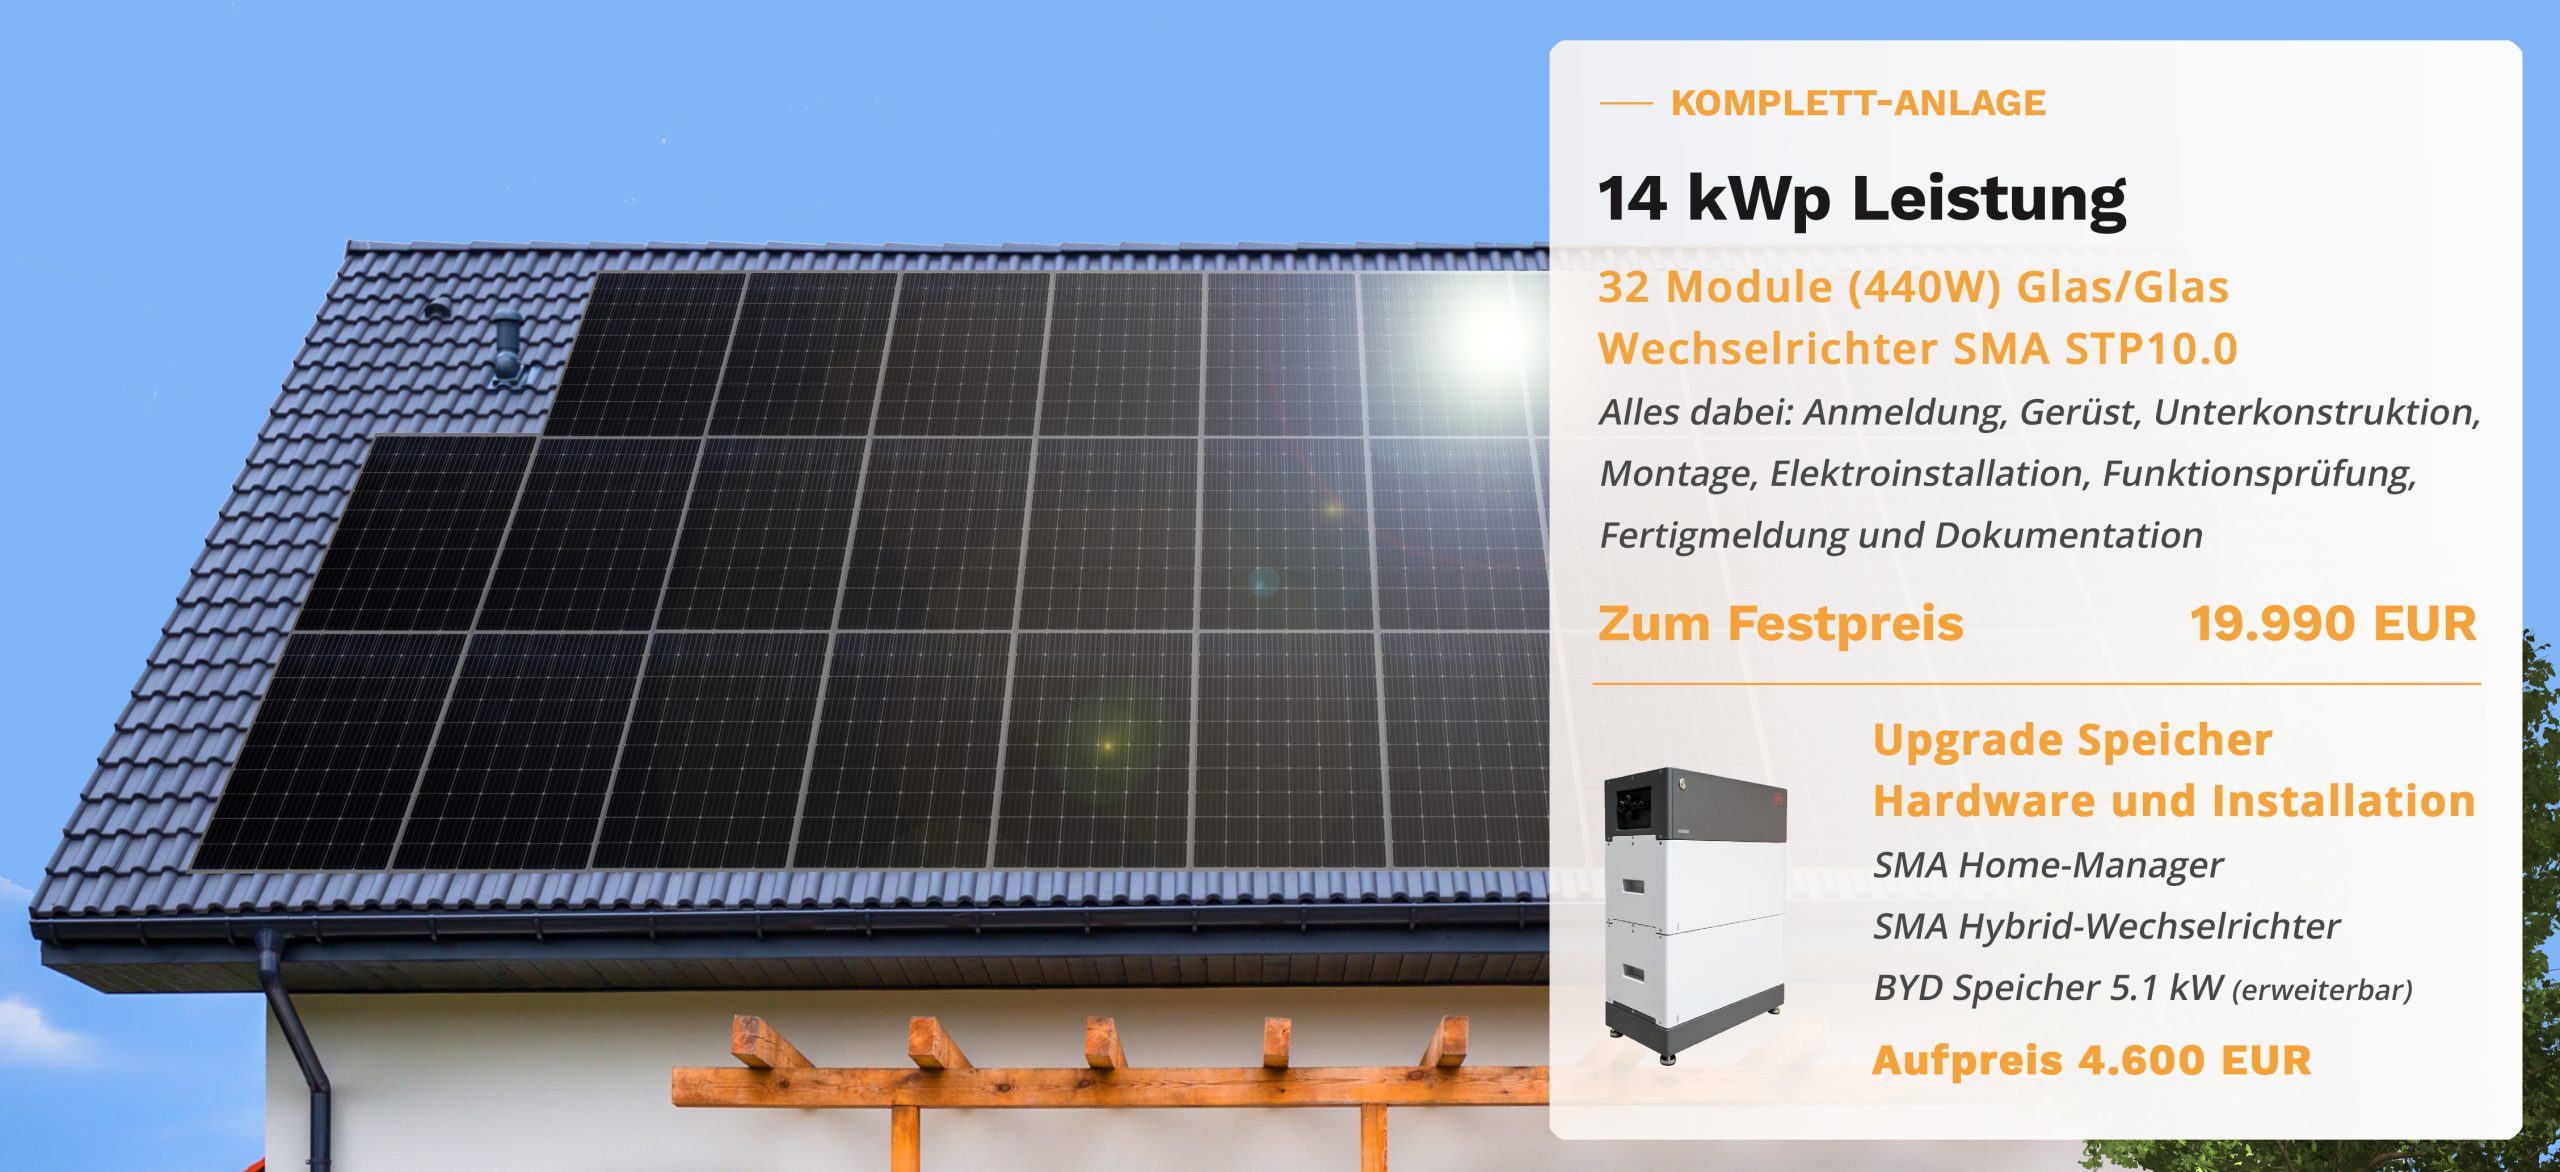 Preis für eine 14kWp Photovoltaik Anlage 19.990 Euro